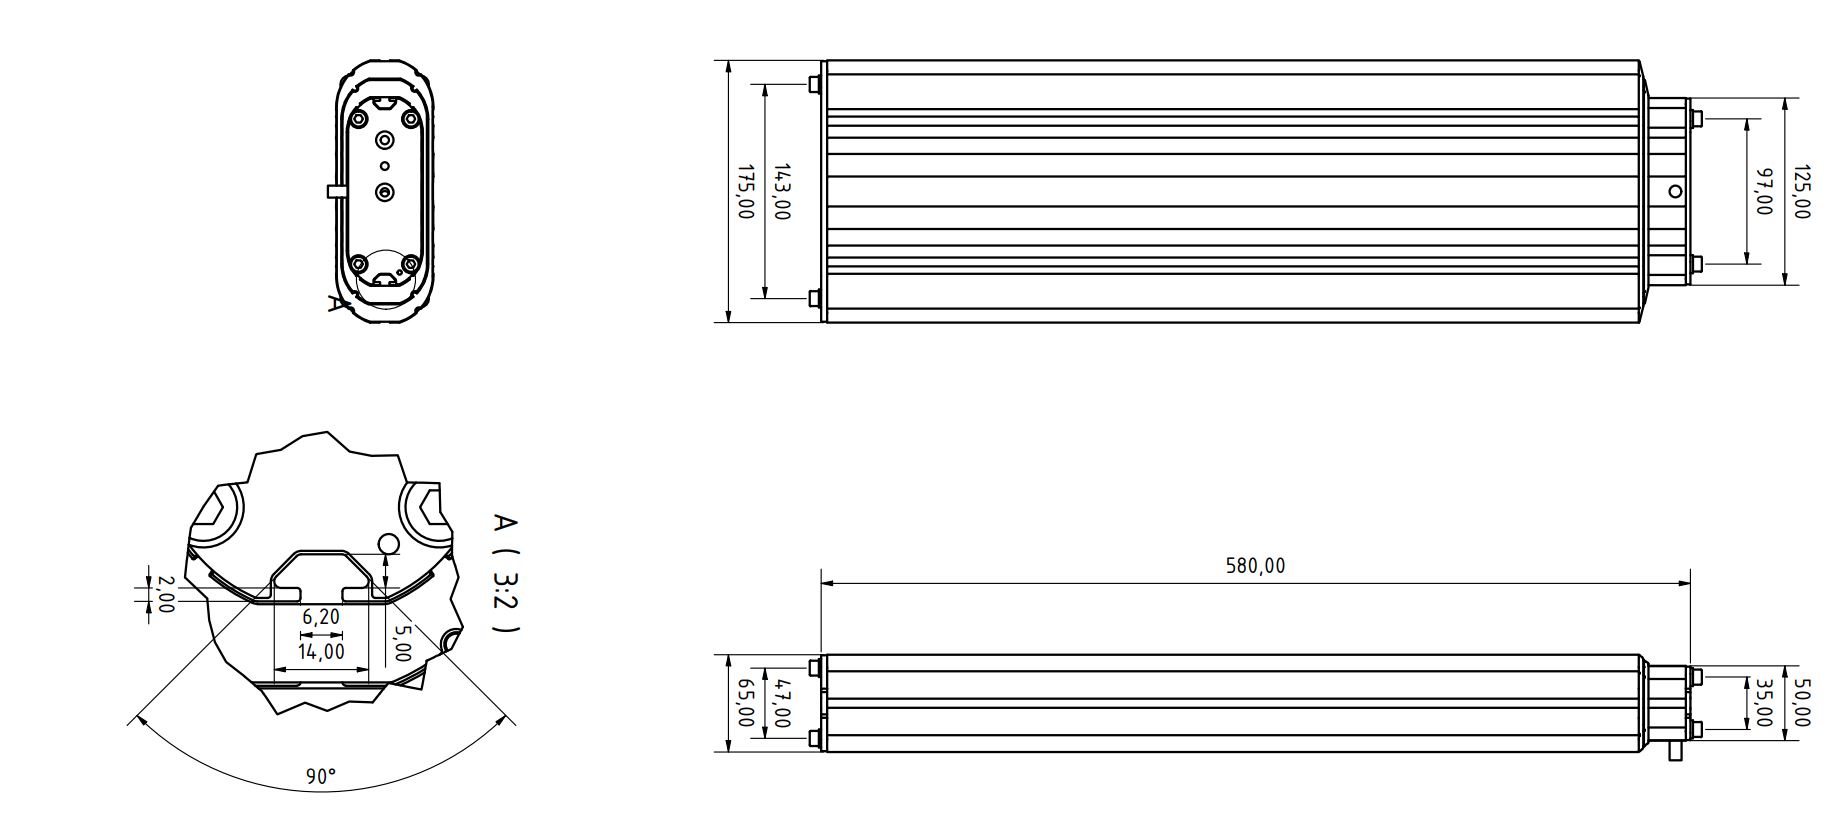 Baumeister & Schack T175-3 Hub 800mm technische Zeichnung.JPG